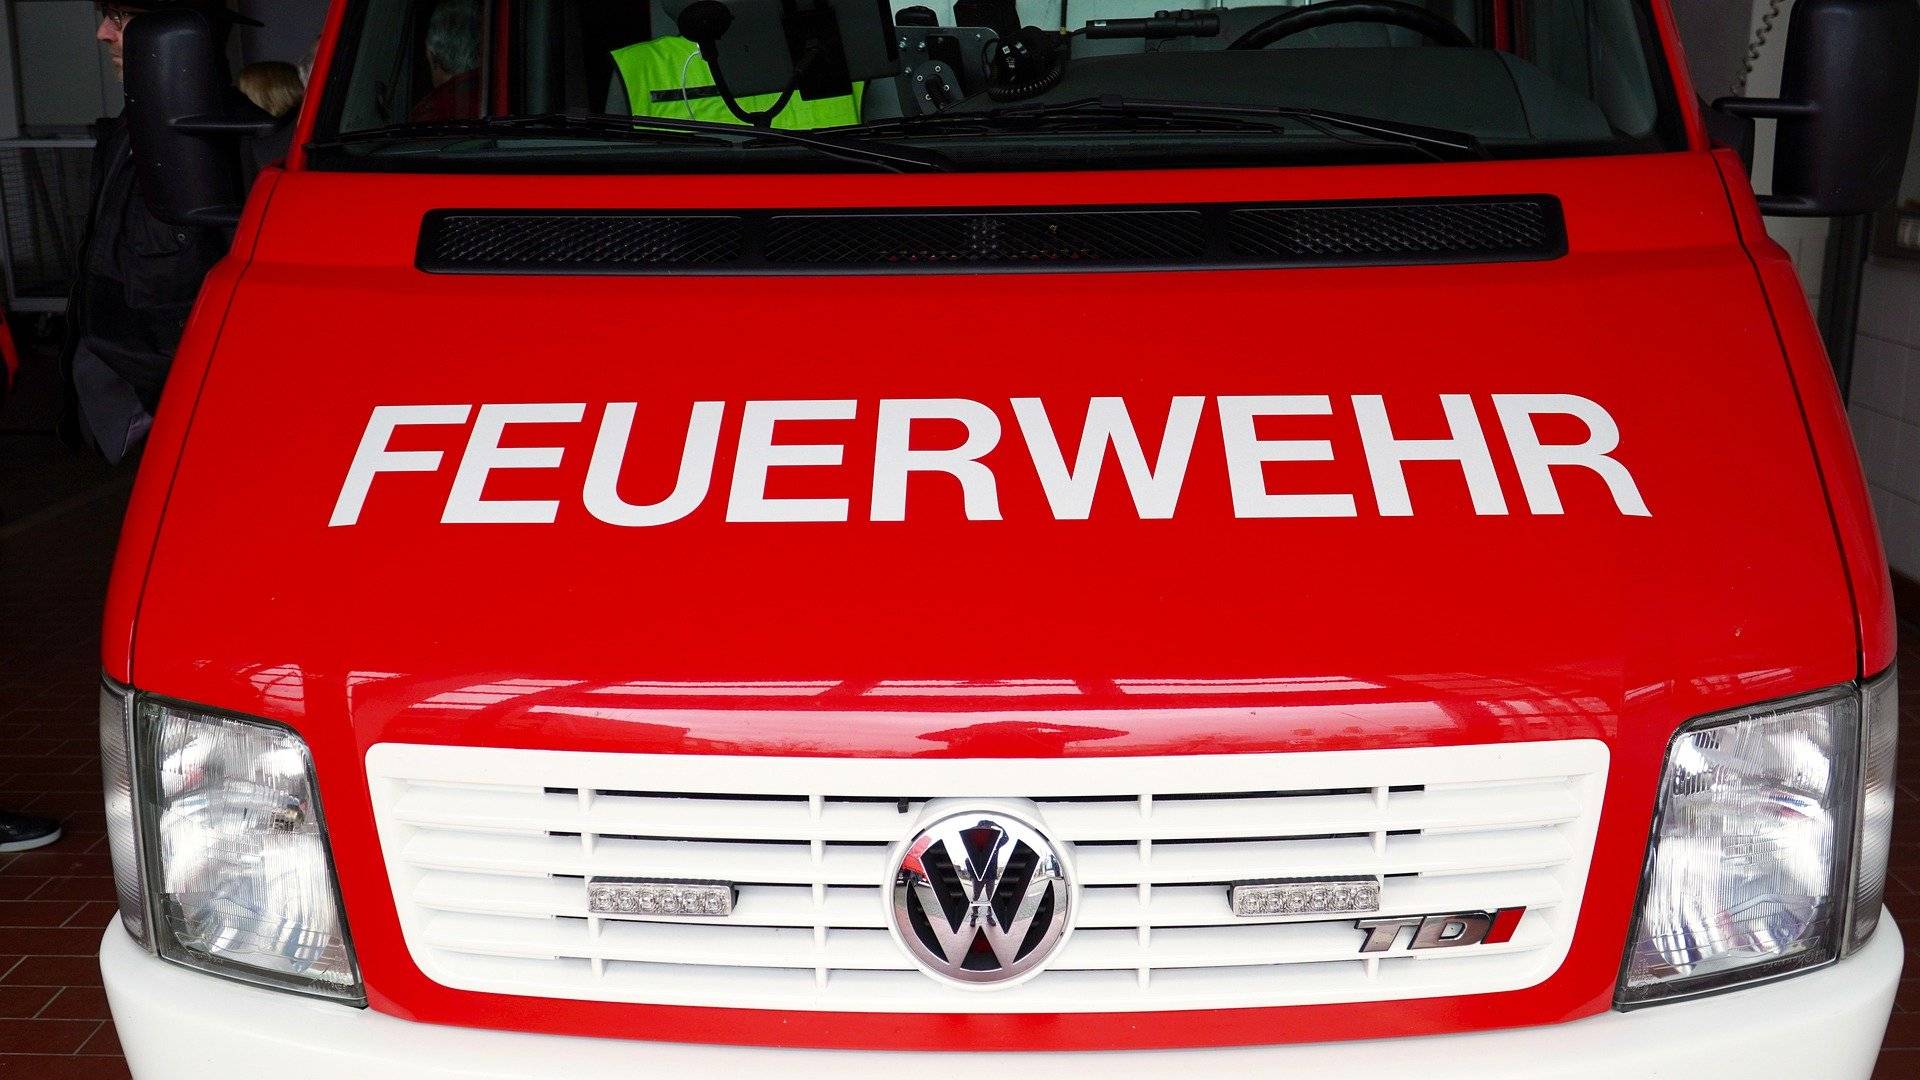 Feuerwehr wird künftig 
in Mettmann ausgebildet